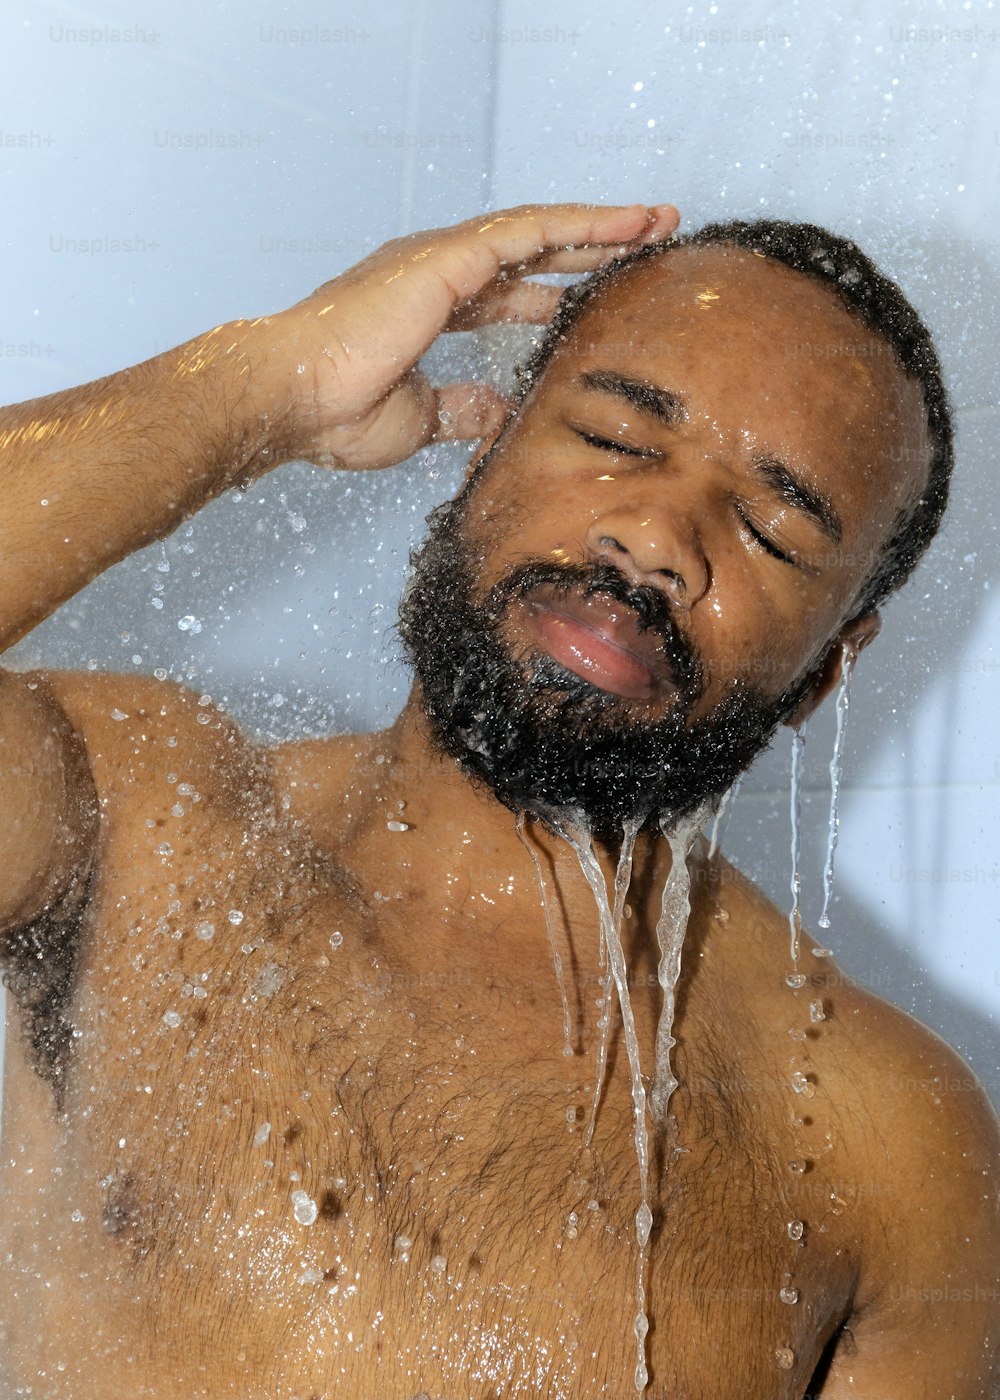 あごひげを生やした男がシャワーを浴びている